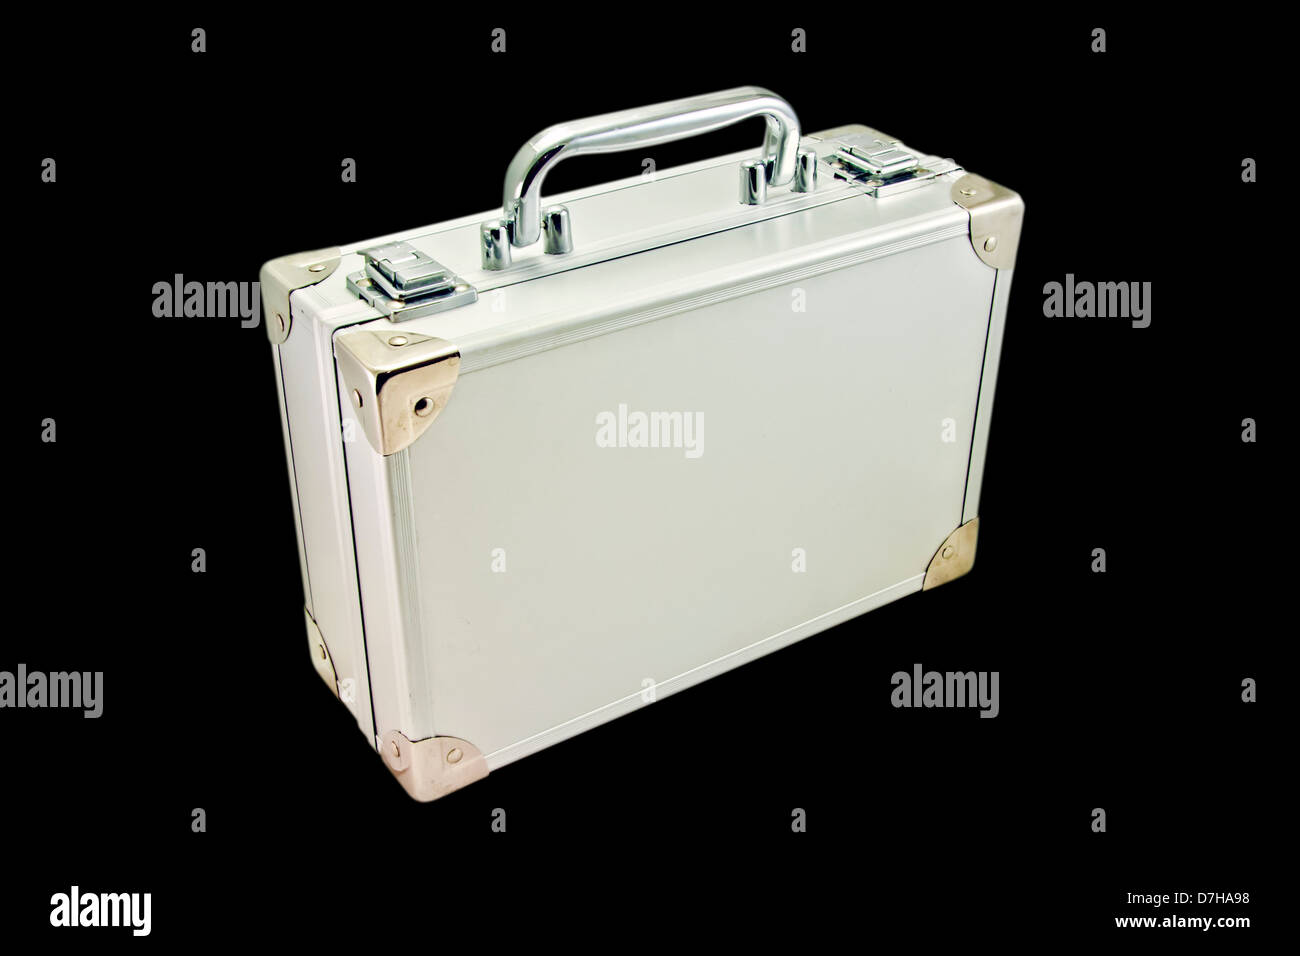 maleta de plata Foto de stock